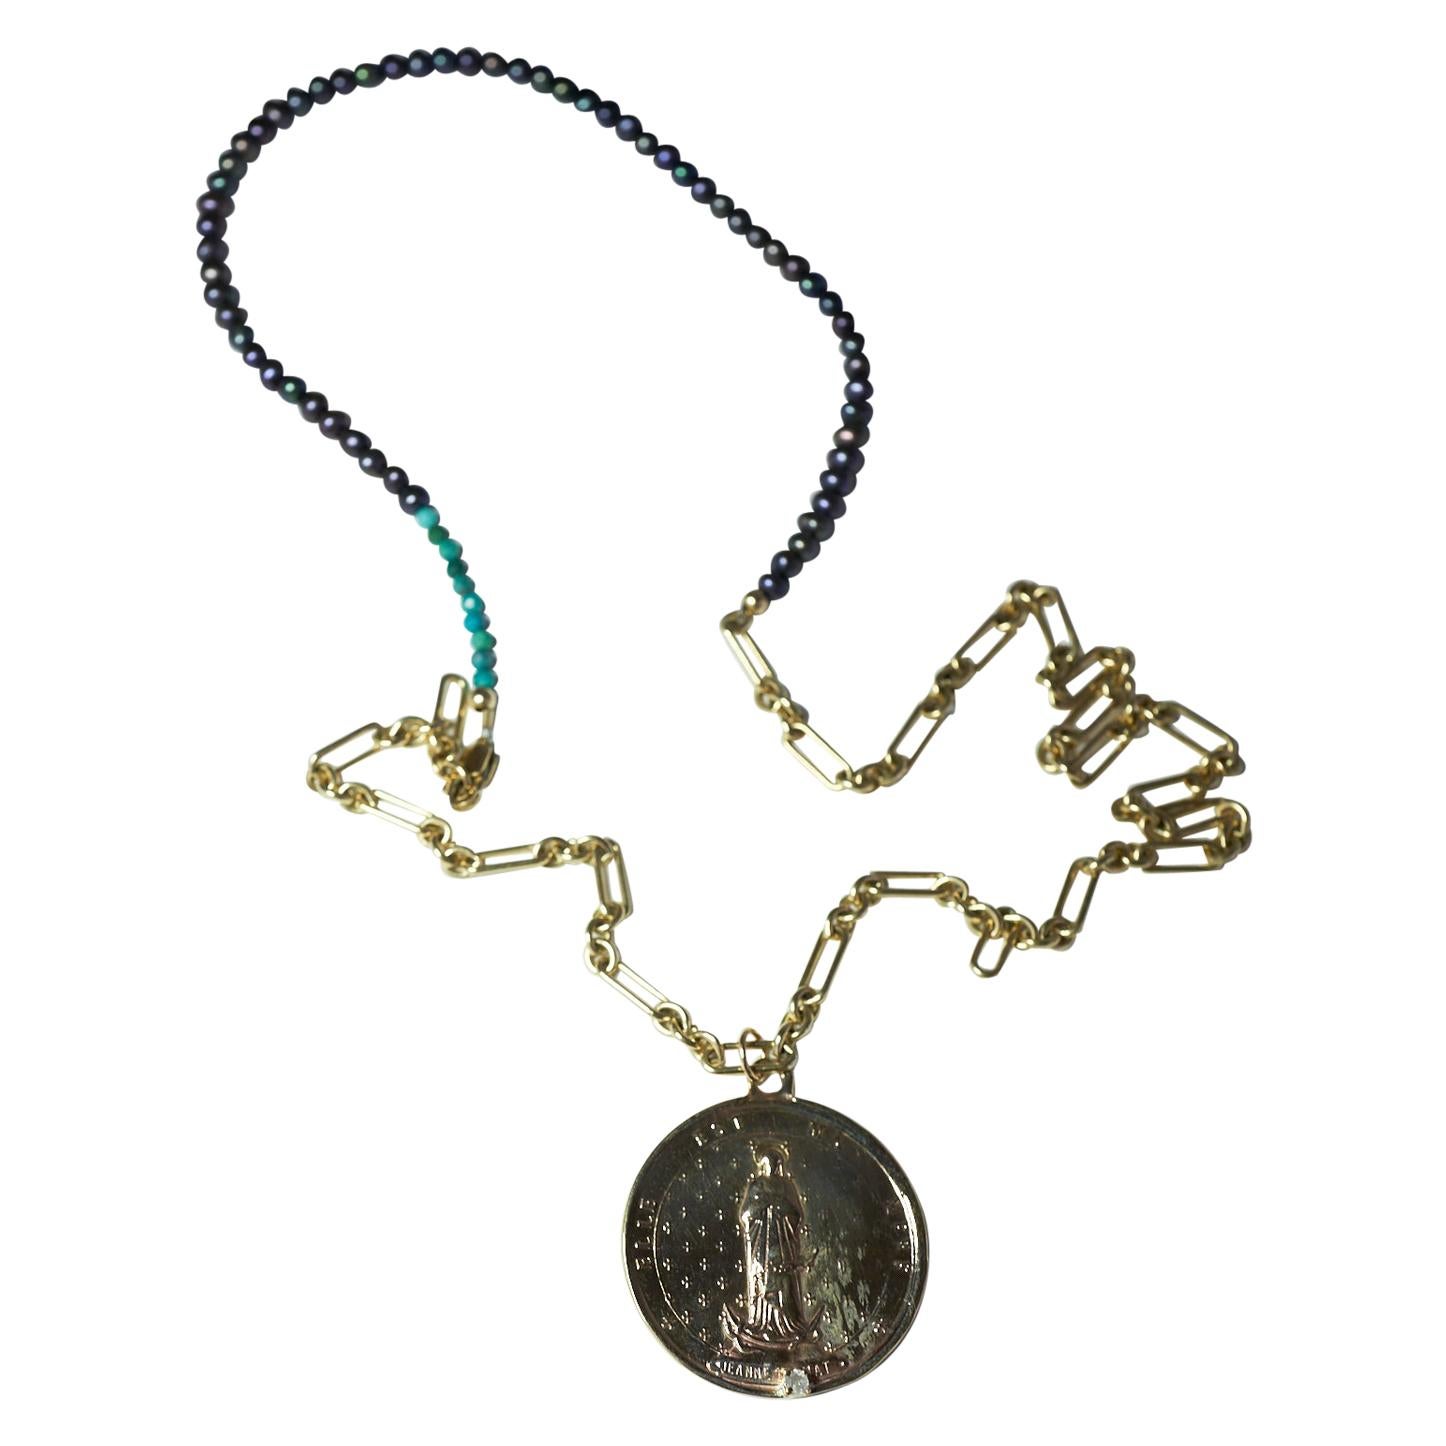 Lange Kette mit Halskette, schwarzer Diamant, schwarze Perle, Medaillon-Anhänger, Türkis J Dauphin